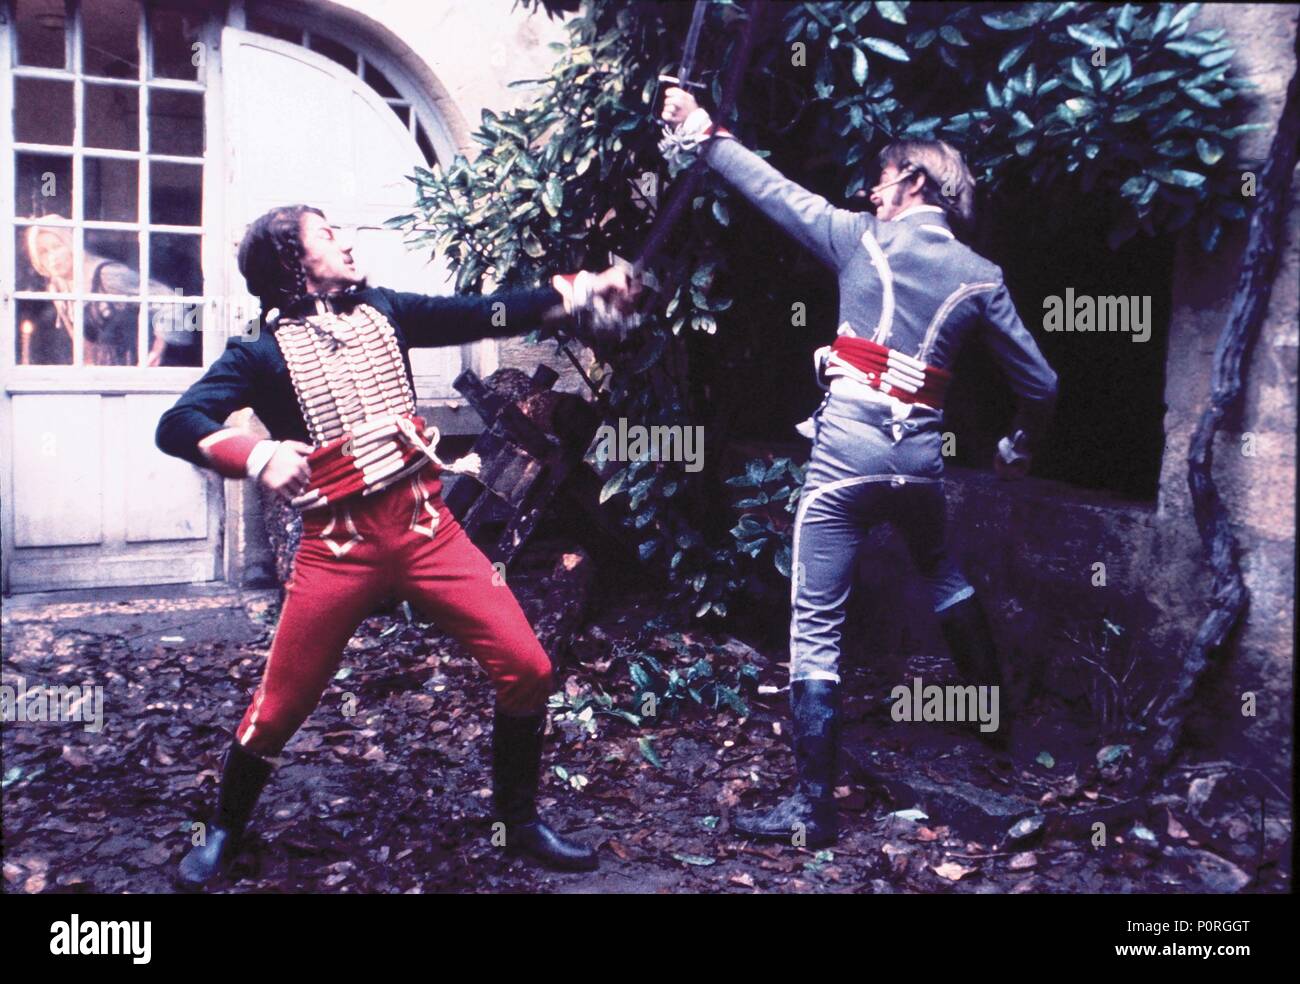 Film Original Titre : La duellistes. Titre en anglais : la duellistes. Film Réalisateur : Ridley Scott. Année : 1977. Credit : PARAMOUNT PICTURES / Album Banque D'Images